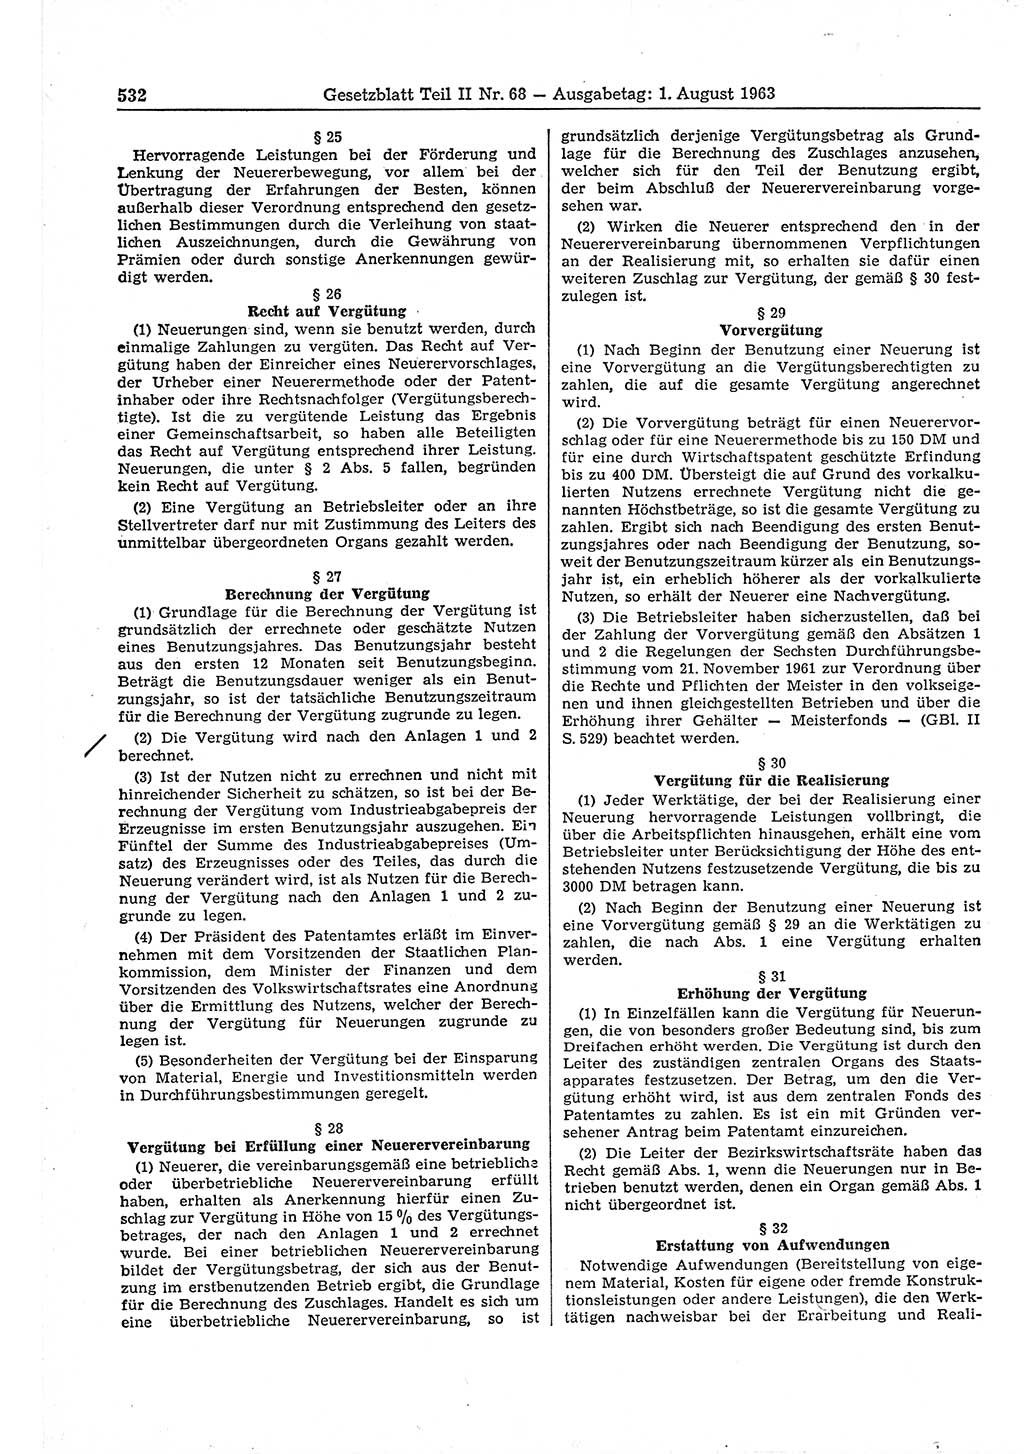 Gesetzblatt (GBl.) der Deutschen Demokratischen Republik (DDR) Teil ⅠⅠ 1963, Seite 532 (GBl. DDR ⅠⅠ 1963, S. 532)